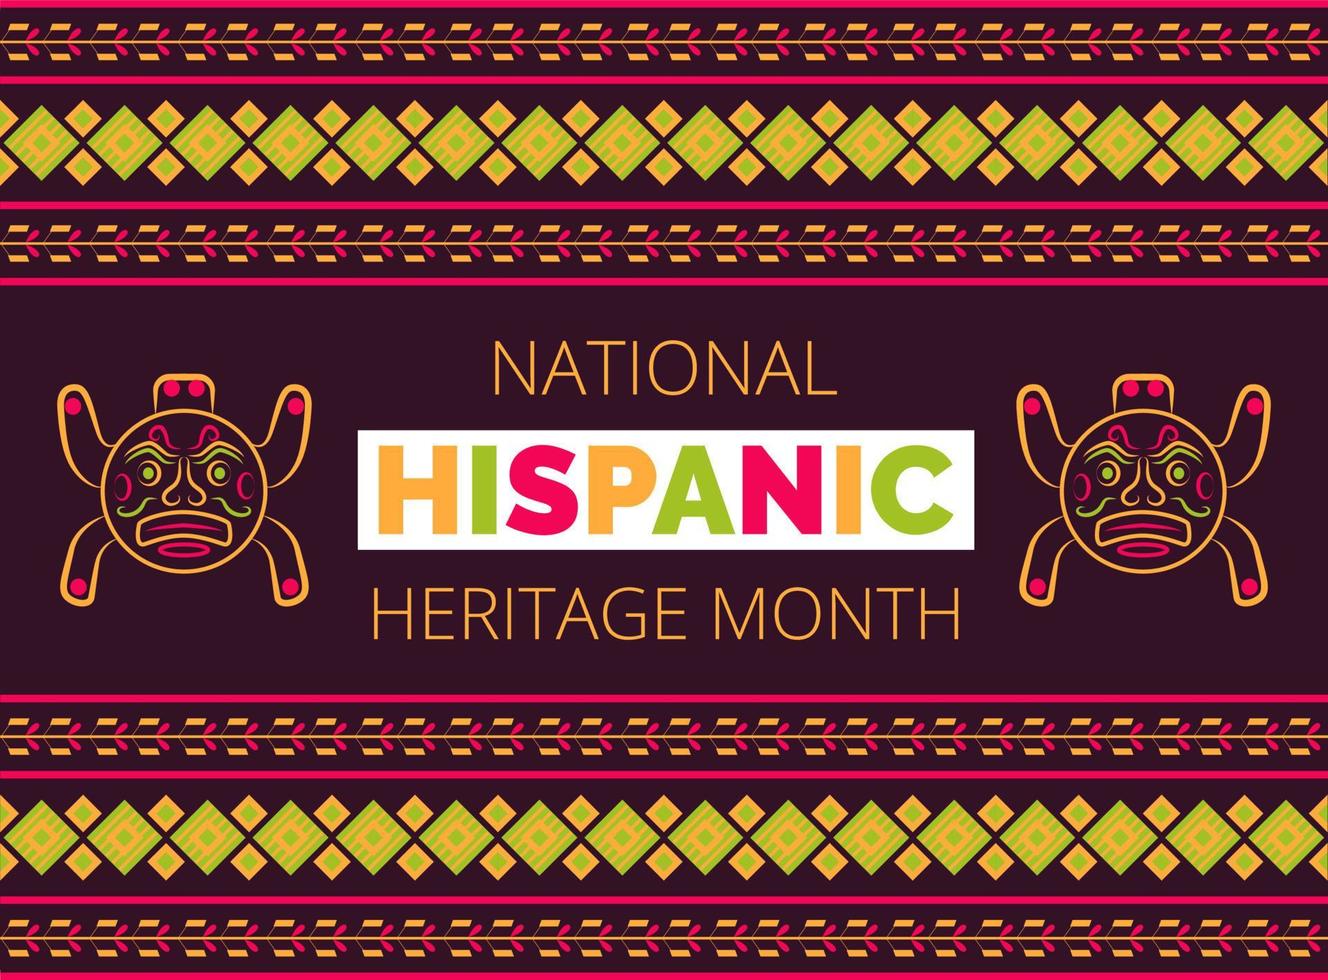 vom 15. september bis zum 15. oktober wird der monat des nationalen hispanischen erbes gefeiert usa. Latino-amerikanischer Poncho-Ornamentvektor für Grußkarten, Banner, Poster vektor